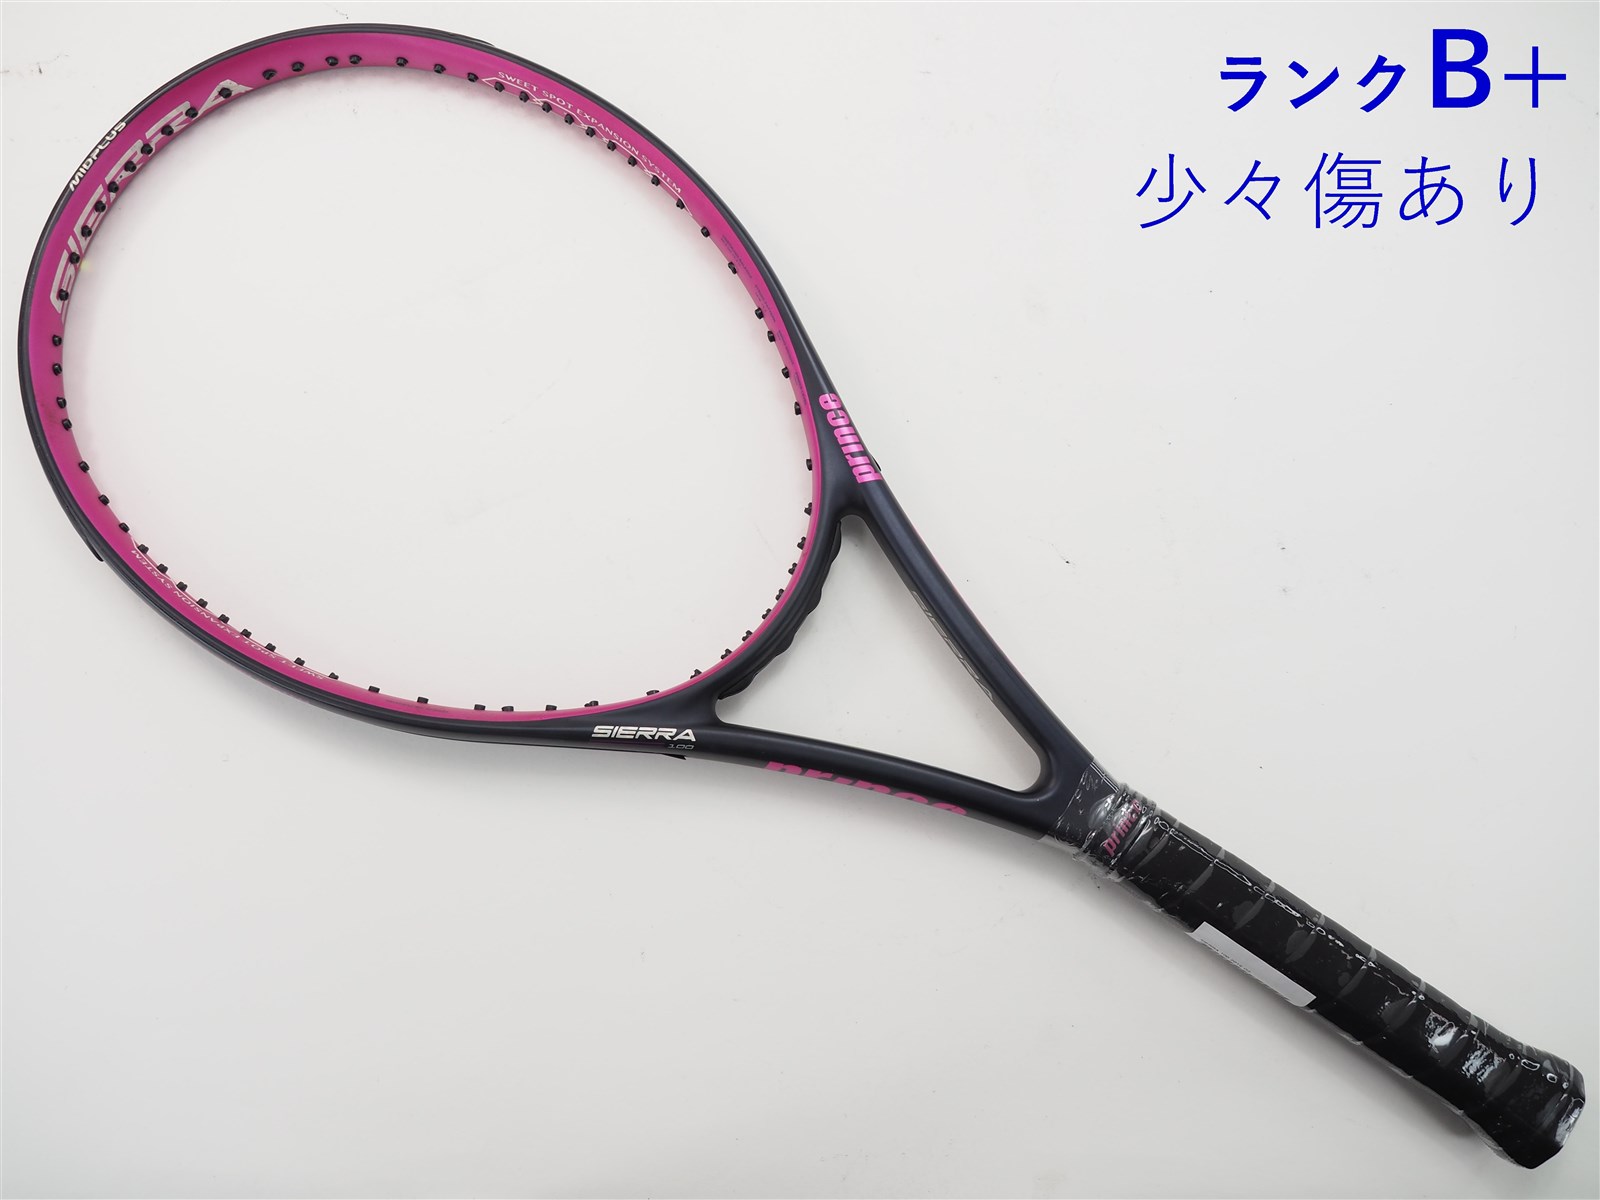 テニスラケット プリンス シエラ 100 2015年モデル (G1)PRINCE SIERRA 100 2015